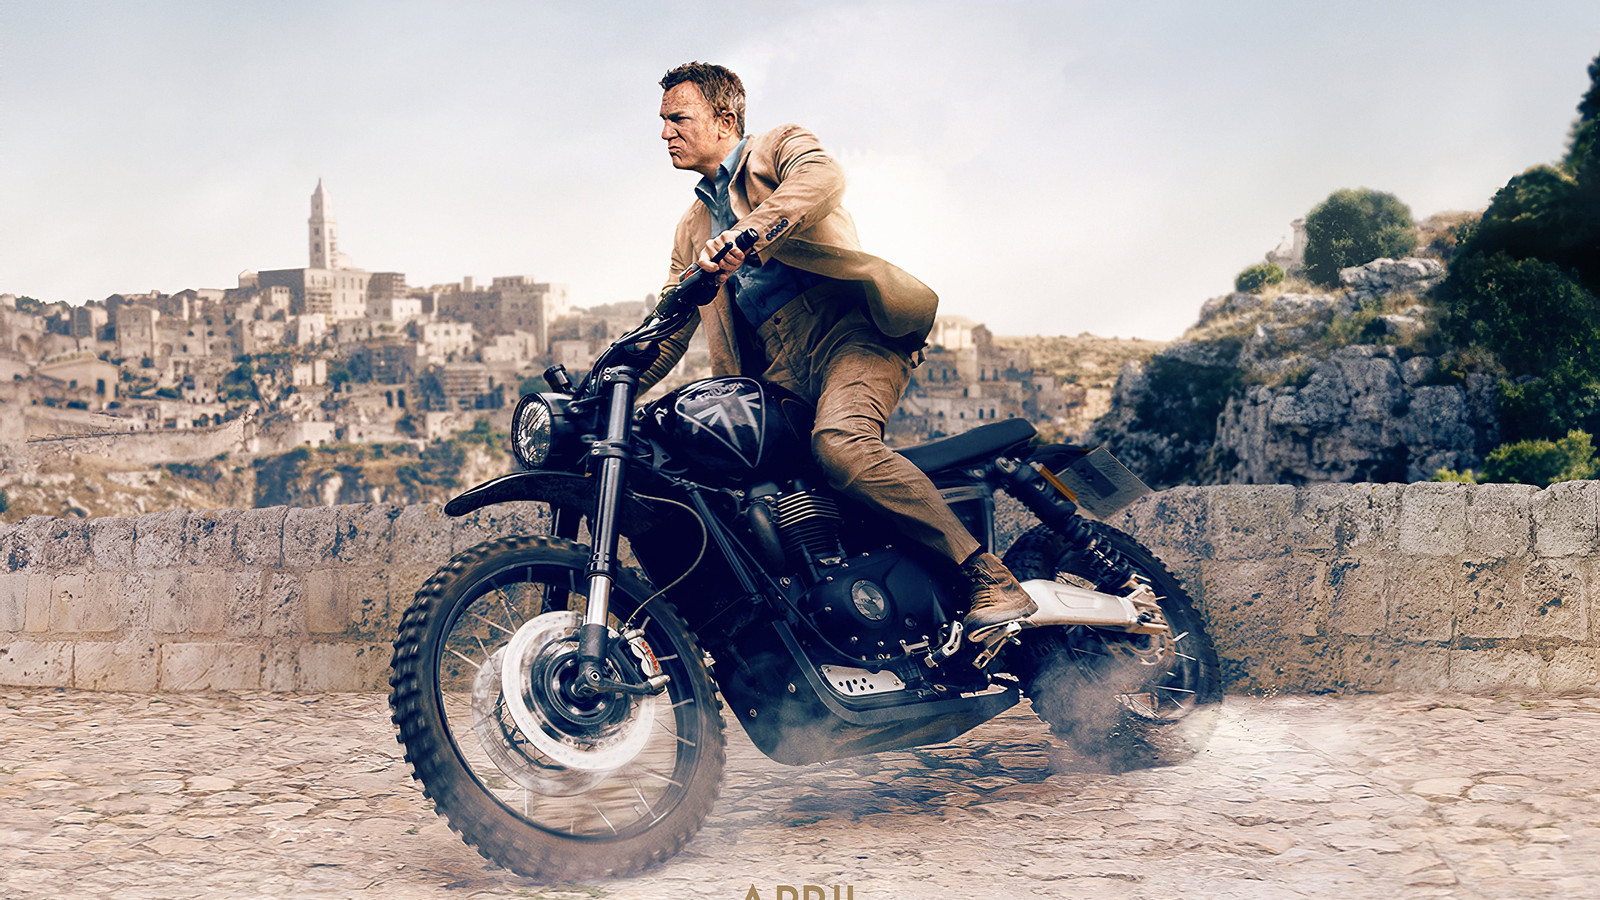 "Mourir peut attendre", cinquième et dernier film de Daniel Craig dans la peau de 007, sortira le 28 septembre en Belgique (avant-première)